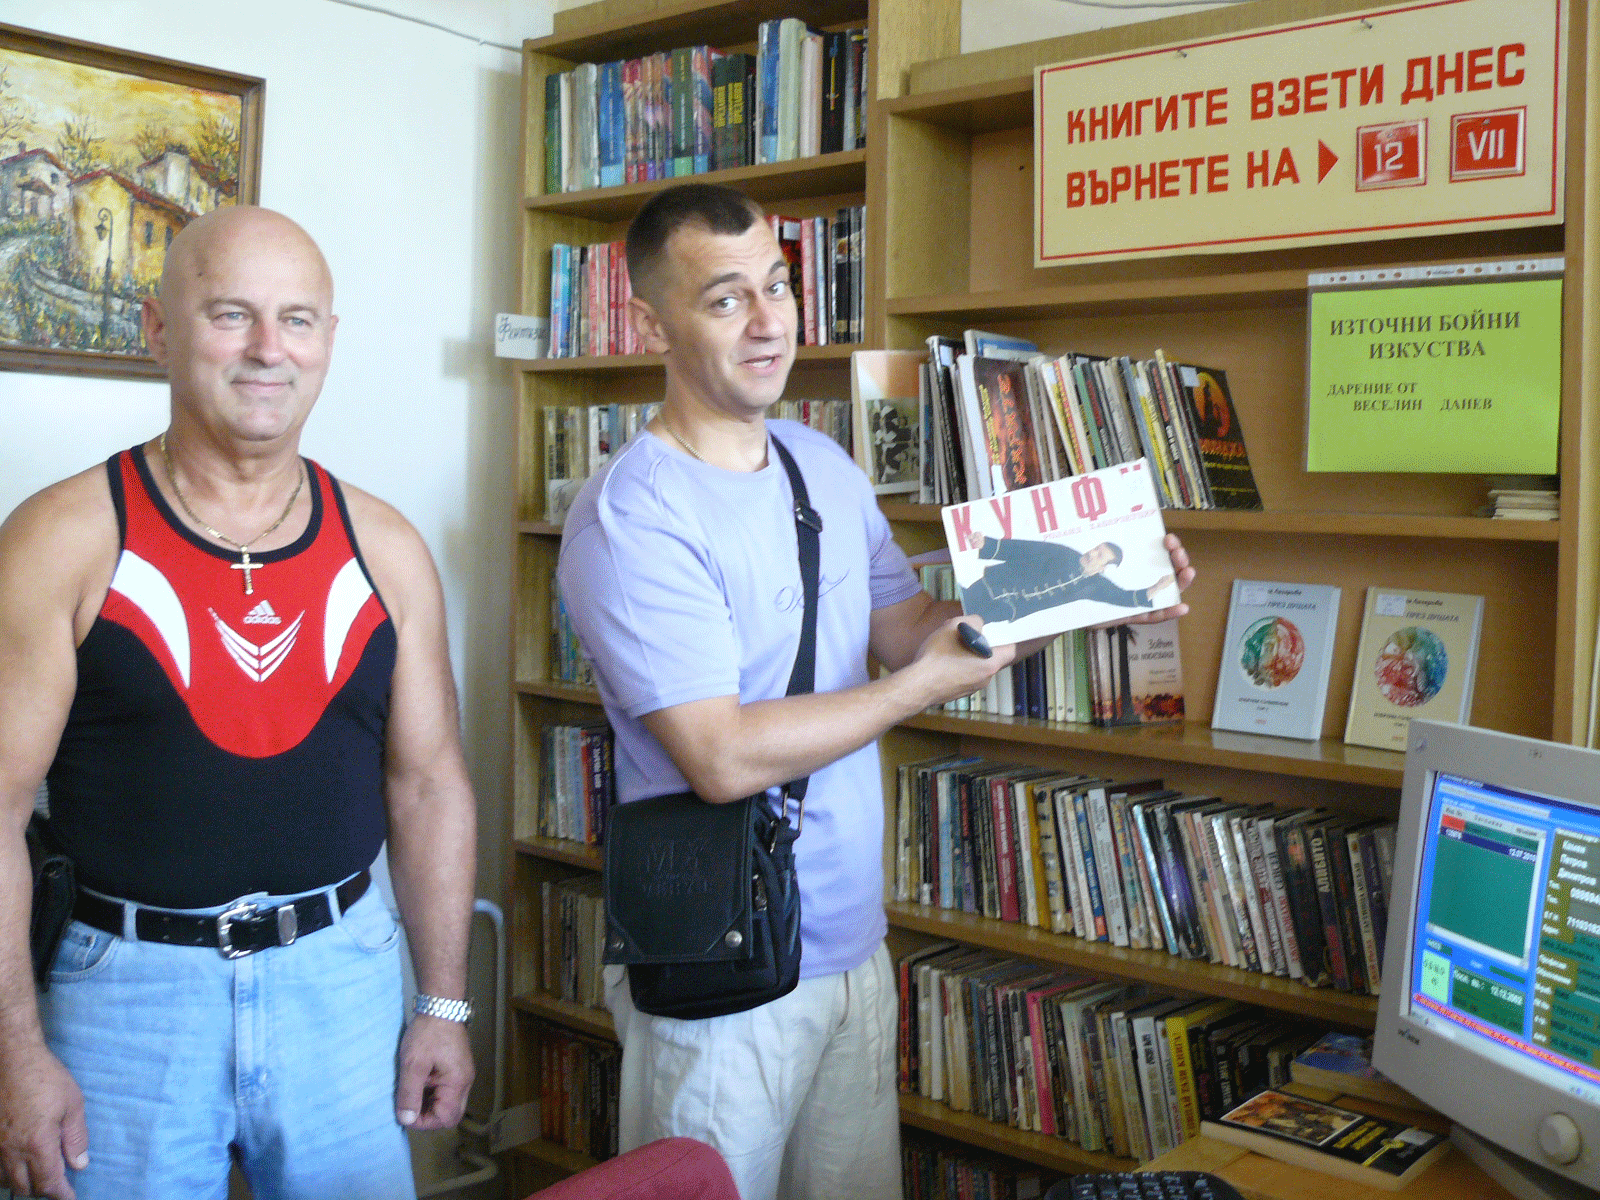 Баща и син дариха над 500 книги на библиотеката